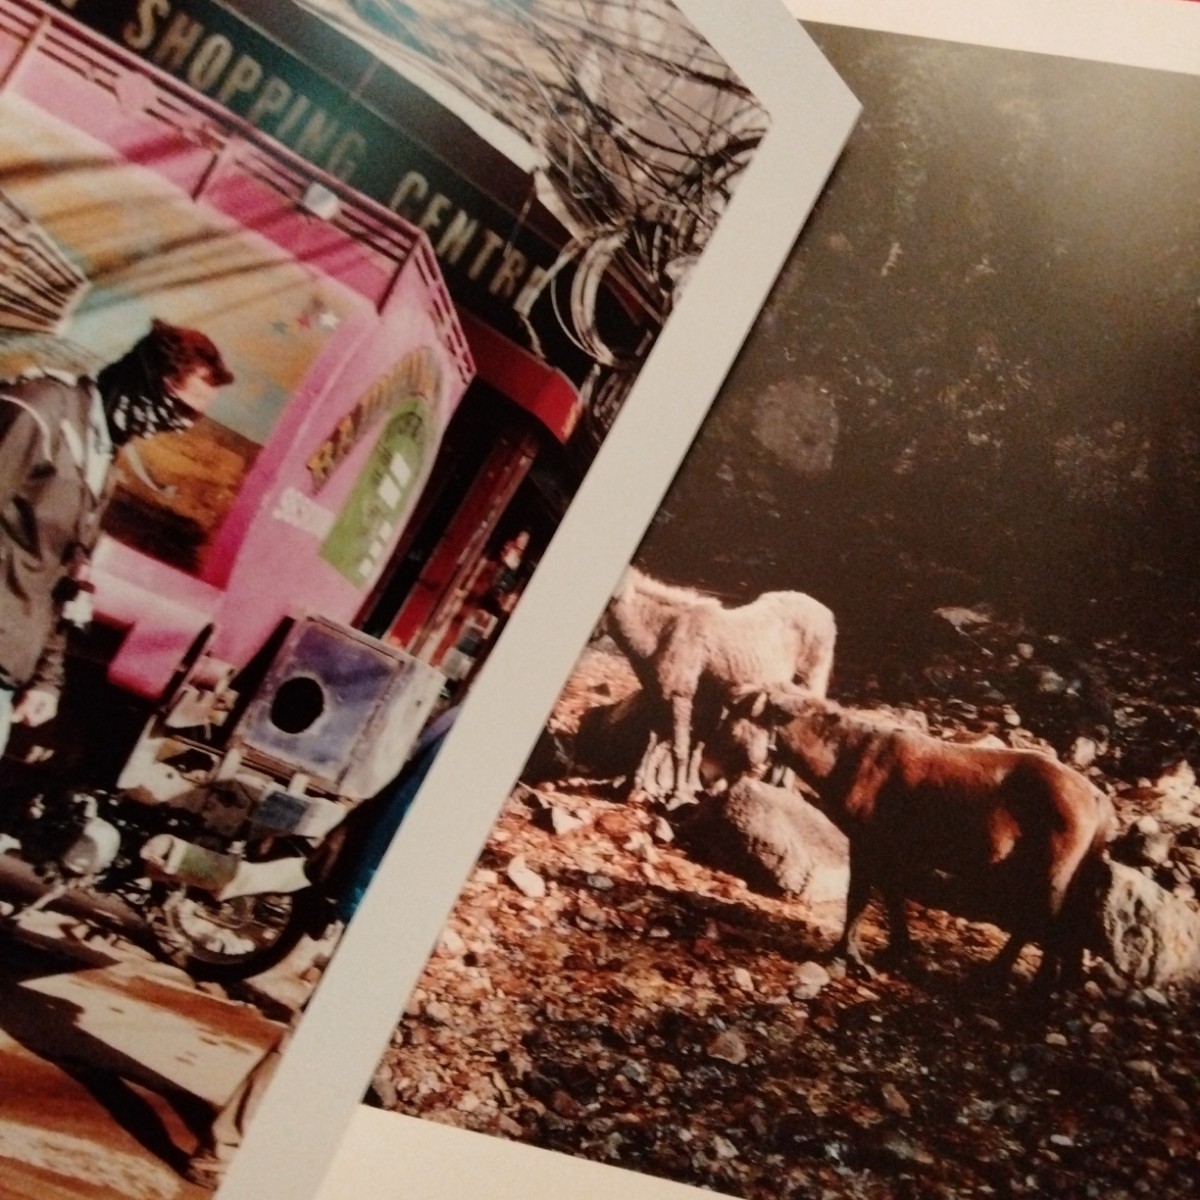 石川直樹 写真集 Naoki Ishikawa『Ama Dablam』『Lhotse』 ヒマラヤシリーズ2冊セット_画像6